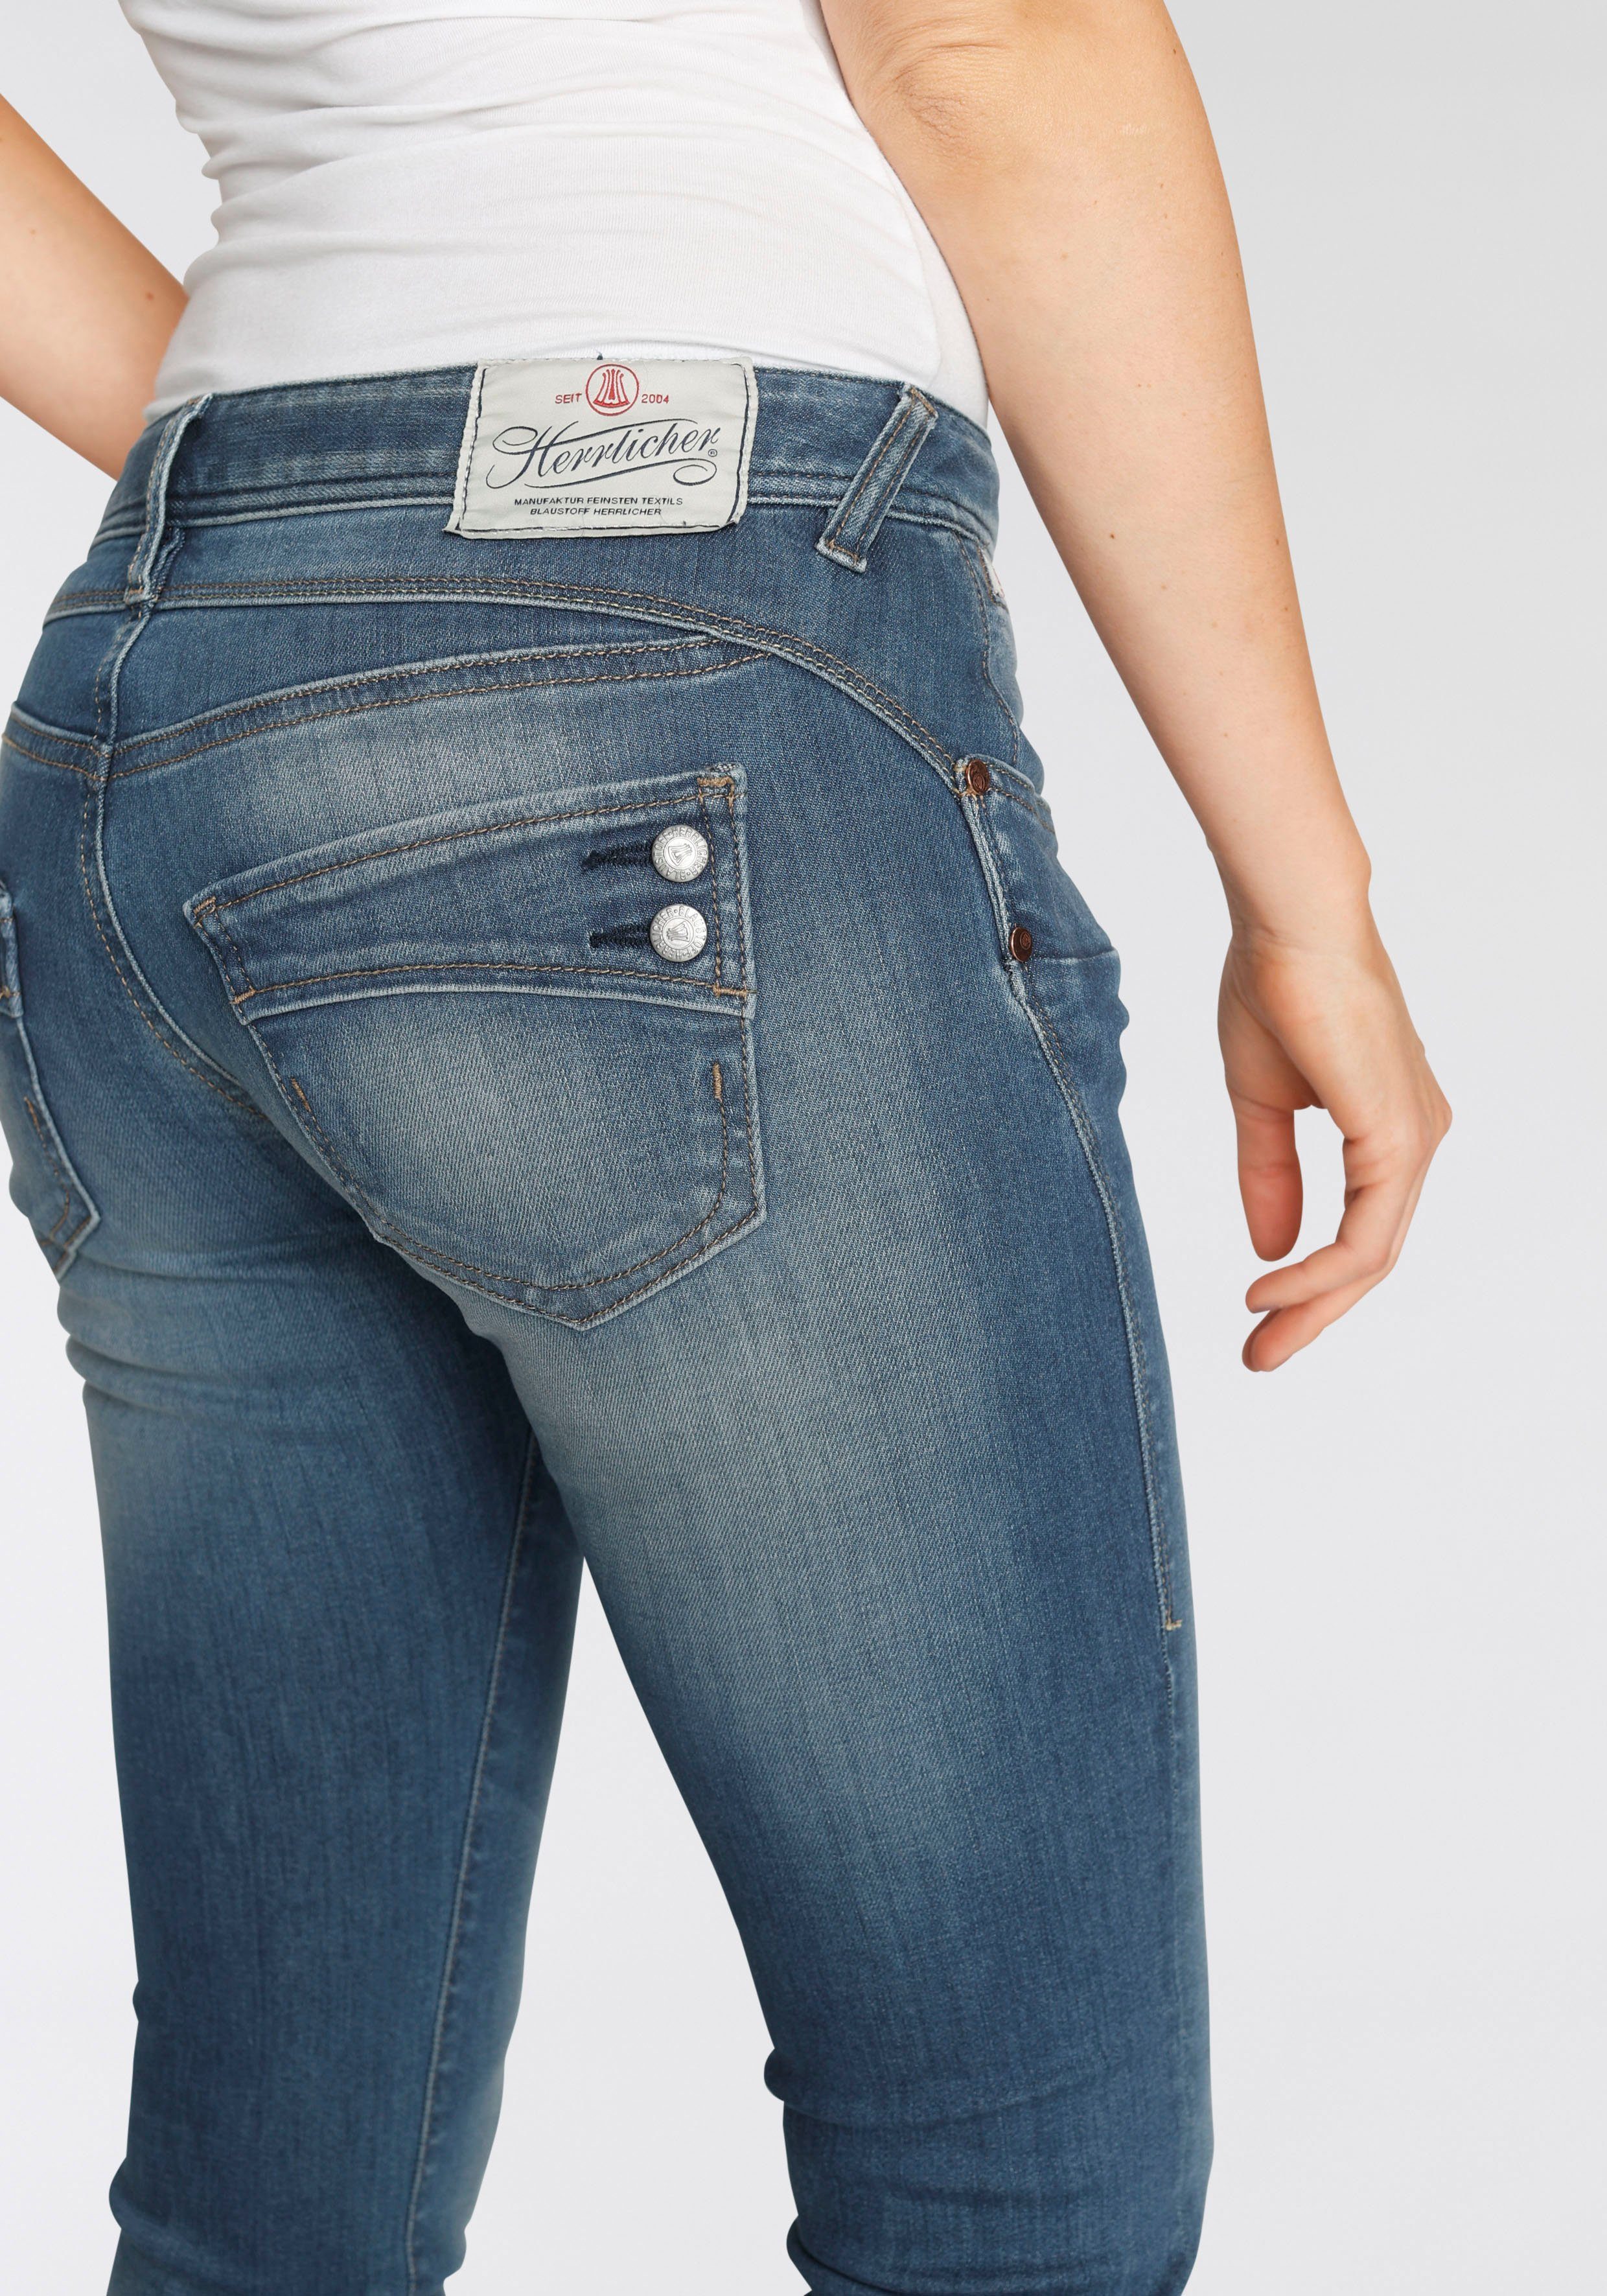 Kitotex Herrlicher ORGANIC Technology dank Slim-fit-Jeans umweltfreundlich SLIM PIPER